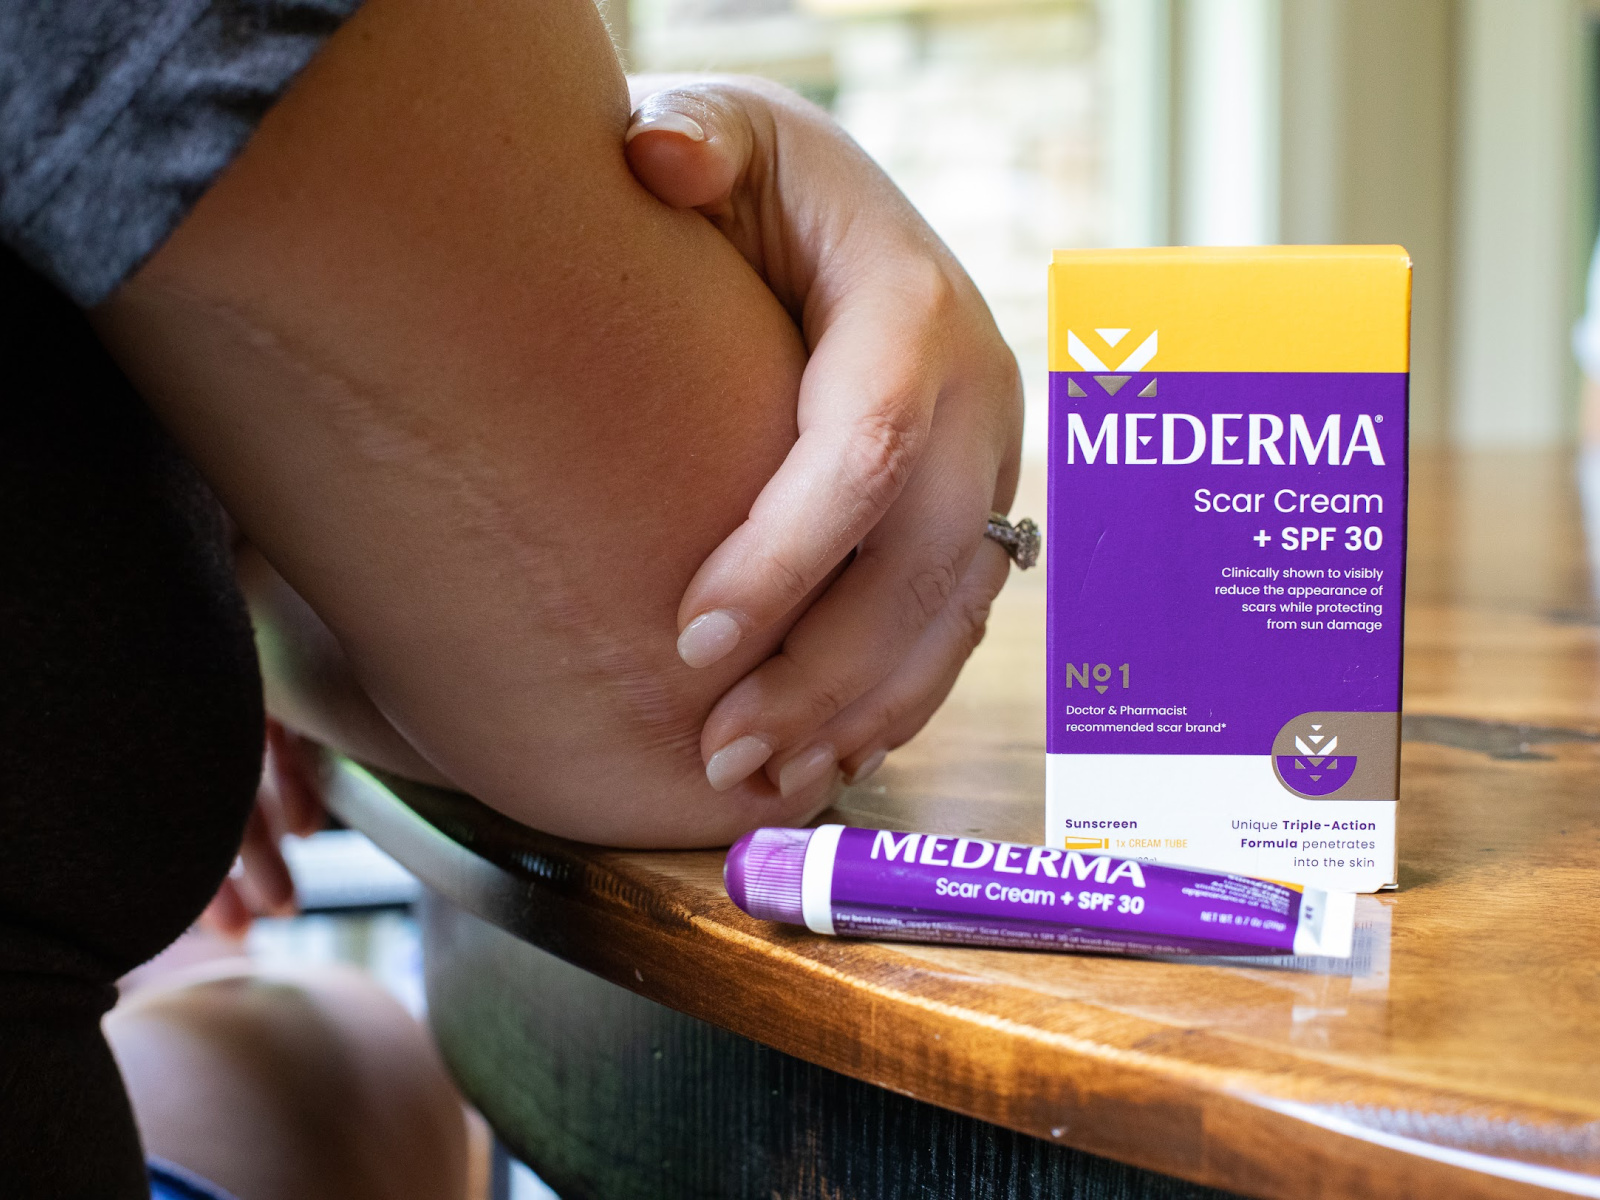 Mederma Scar Cream + SPF 30 Just $6.99 At Publix (Regular Price $19.99)